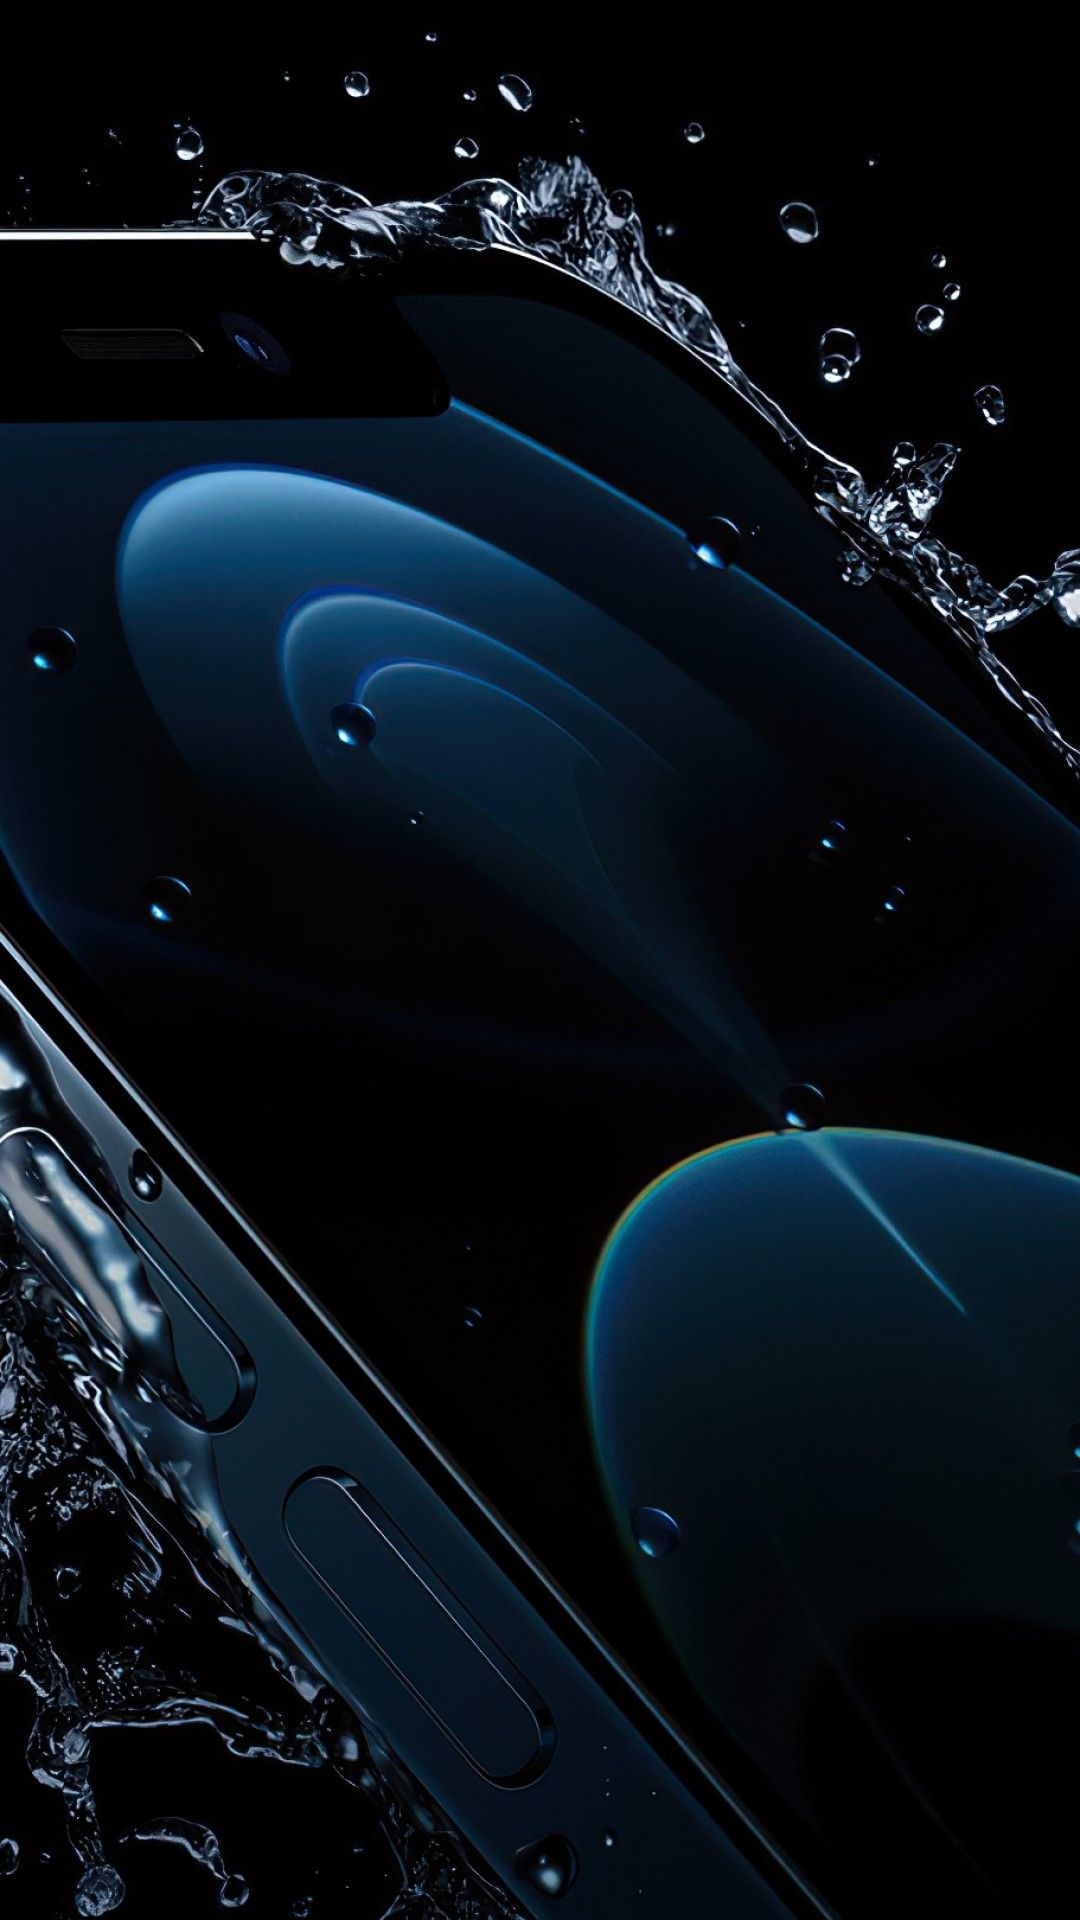 Hình nền đen iPhone 12 Pro Max sẽ khiến bạn thấy màn hình điện thoại của mình chuyển động một cách êm ái và tinh tế hơn. Không chỉ thế, độ tương phản và sự đậm nét của hình ảnh sẽ được tăng cường một cách rõ rệt khi bạn sử dụng hình nền này. Hãy xem ngay để trải nghiệm cảm giác thật khác biệt!